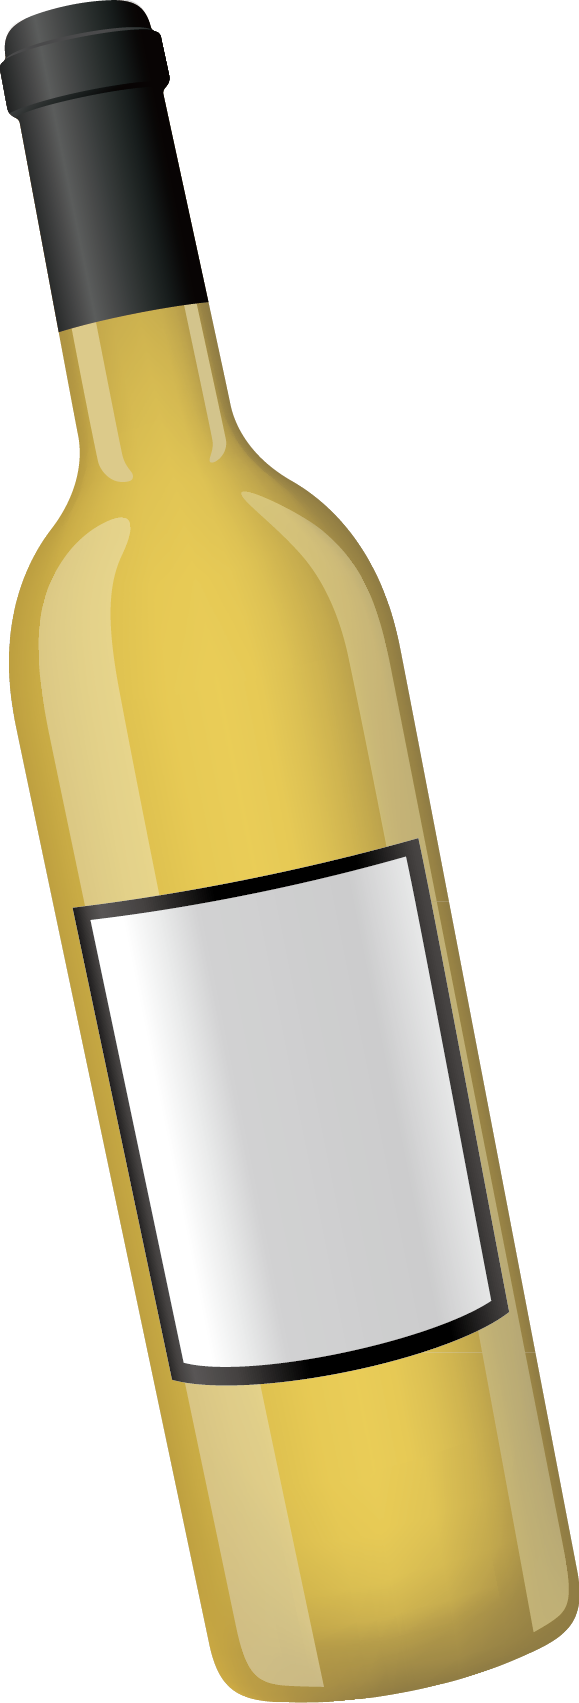 Wine Bottle Computer file - Wine bottle decoration design vector png ...